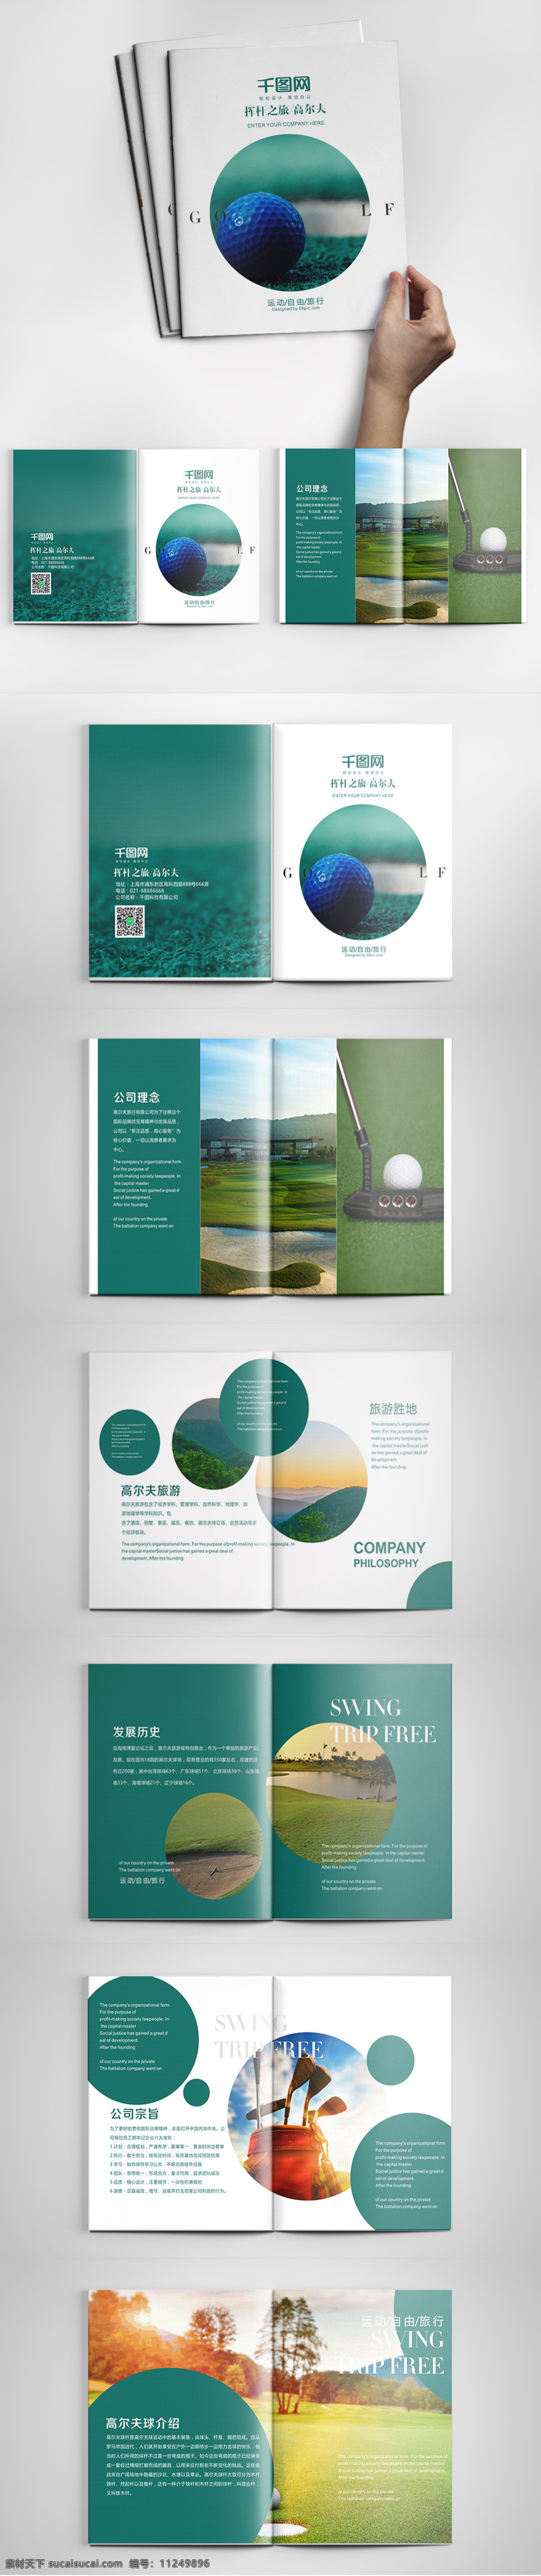 绿色 小清 新高 尔夫 旅游 画册 大气 高尔夫 高尔夫画册 高尔夫球 高尔夫球画册 画册模板 画册设计 简约 商务 时尚 体育运动 运动